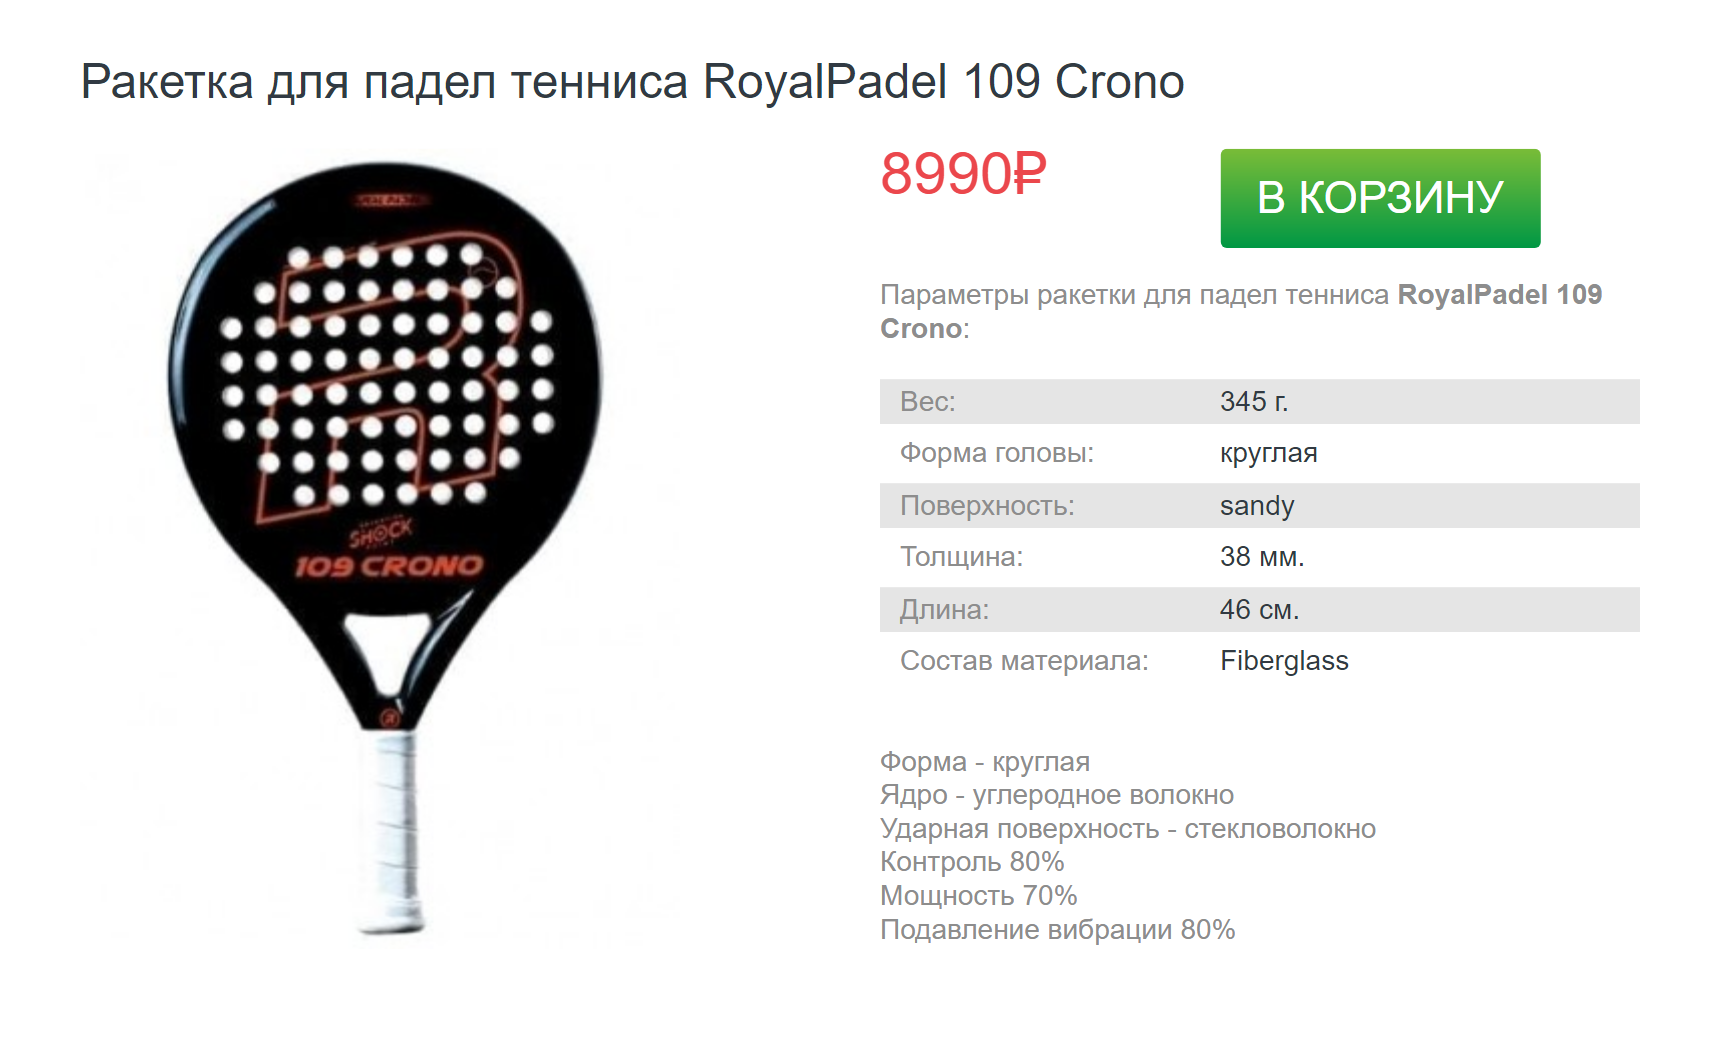 Для тех, кто не хочет связываться с доставкой из зарубежных интернет-магазинов, есть варианты и в российских. Источник: tennis-world.ru